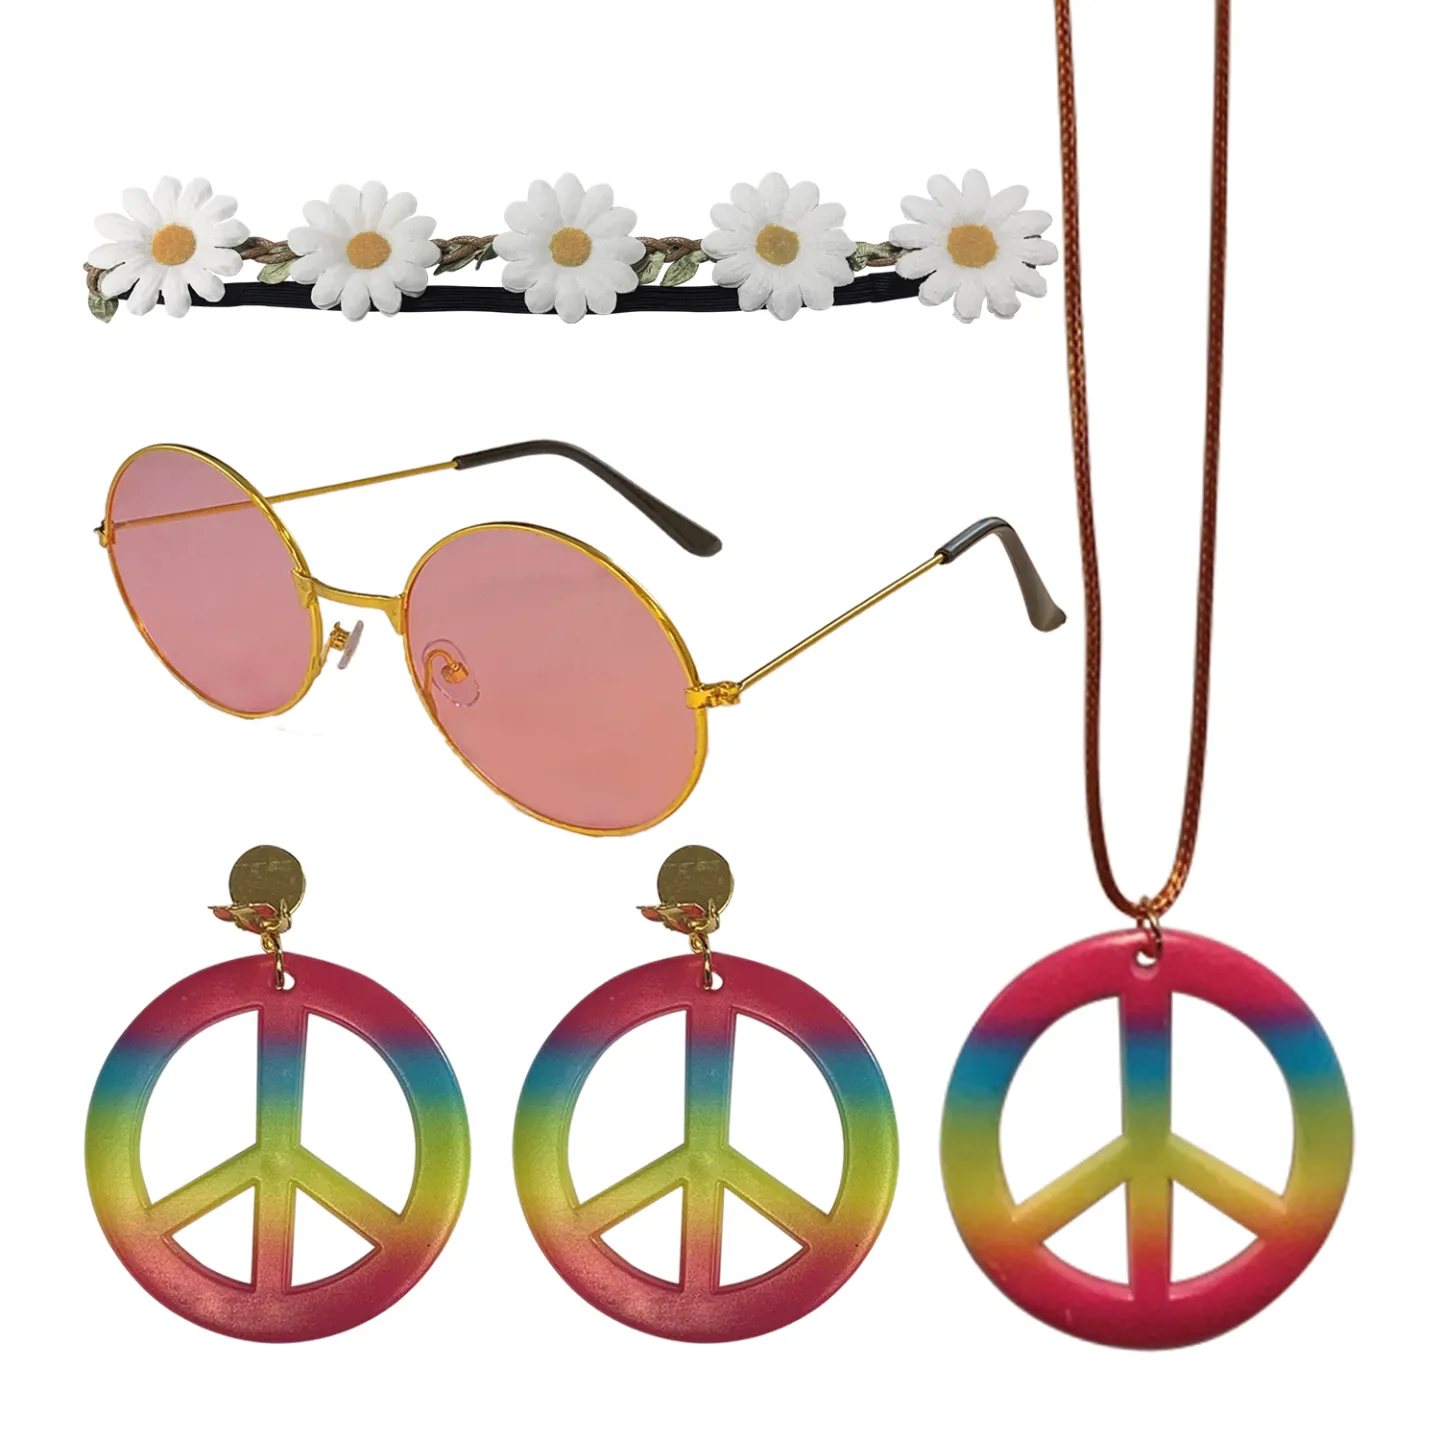 Carnaval accessoireset – Hippie outfit set.